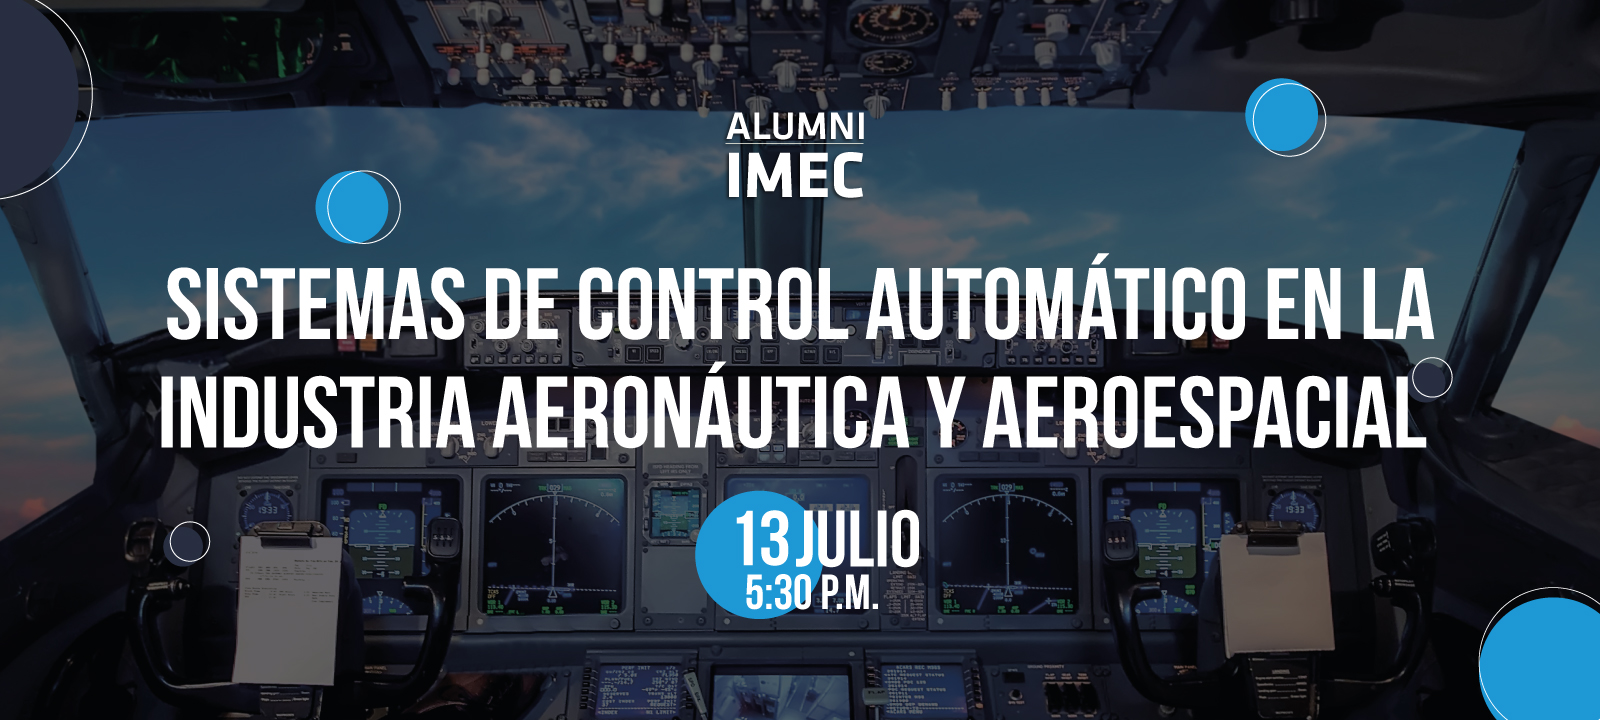 Desarrollo y Certificación de Sistemas de Control Automático en la Industria Aeronáutica y Aeroespacial Andres Perez Uniandes